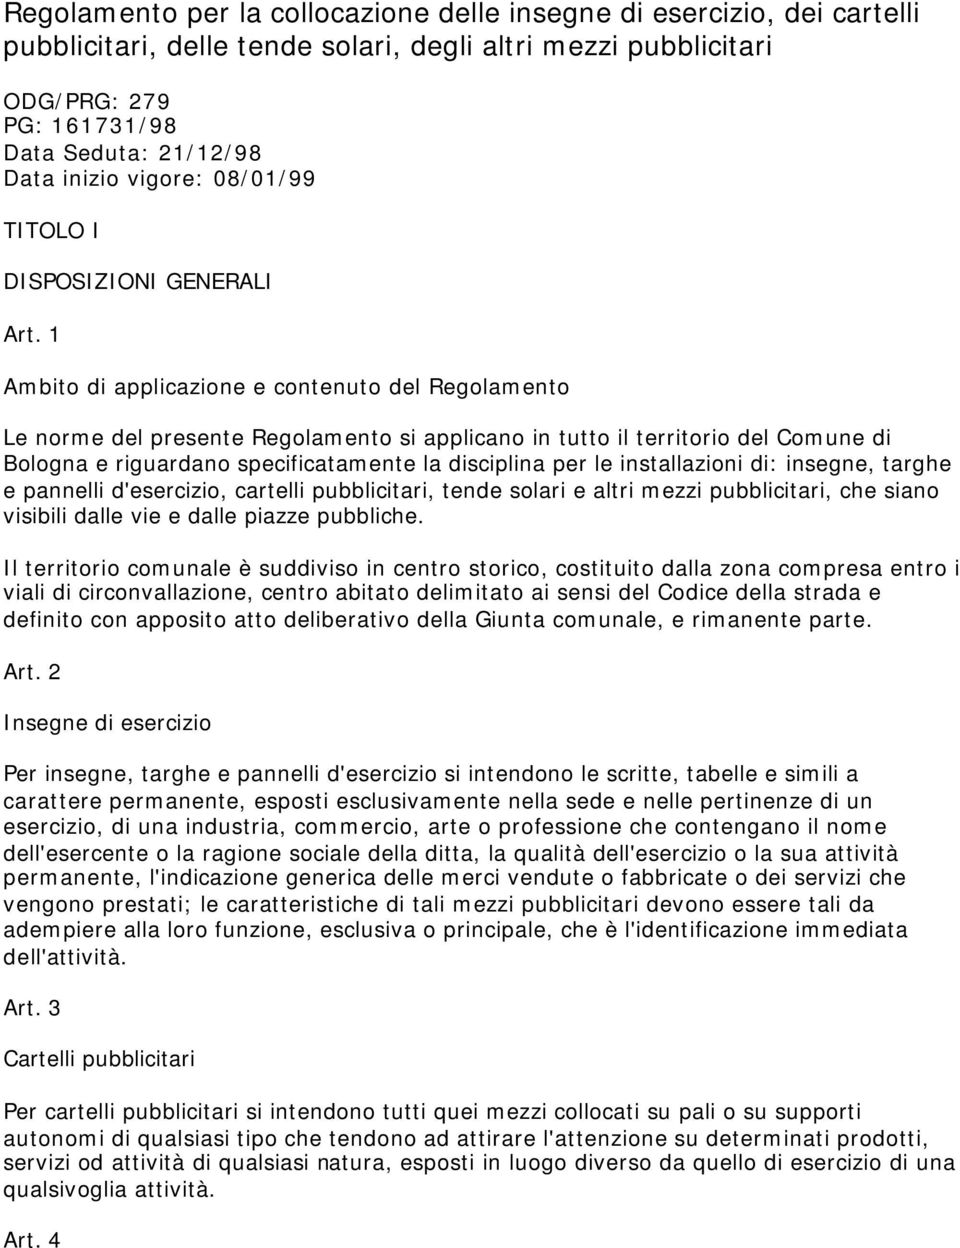 1 Ambito di applicazione e contenuto del Regolamento Le norme del presente Regolamento si applicano in tutto il territorio del Comune di Bologna e riguardano specificatamente la disciplina per le